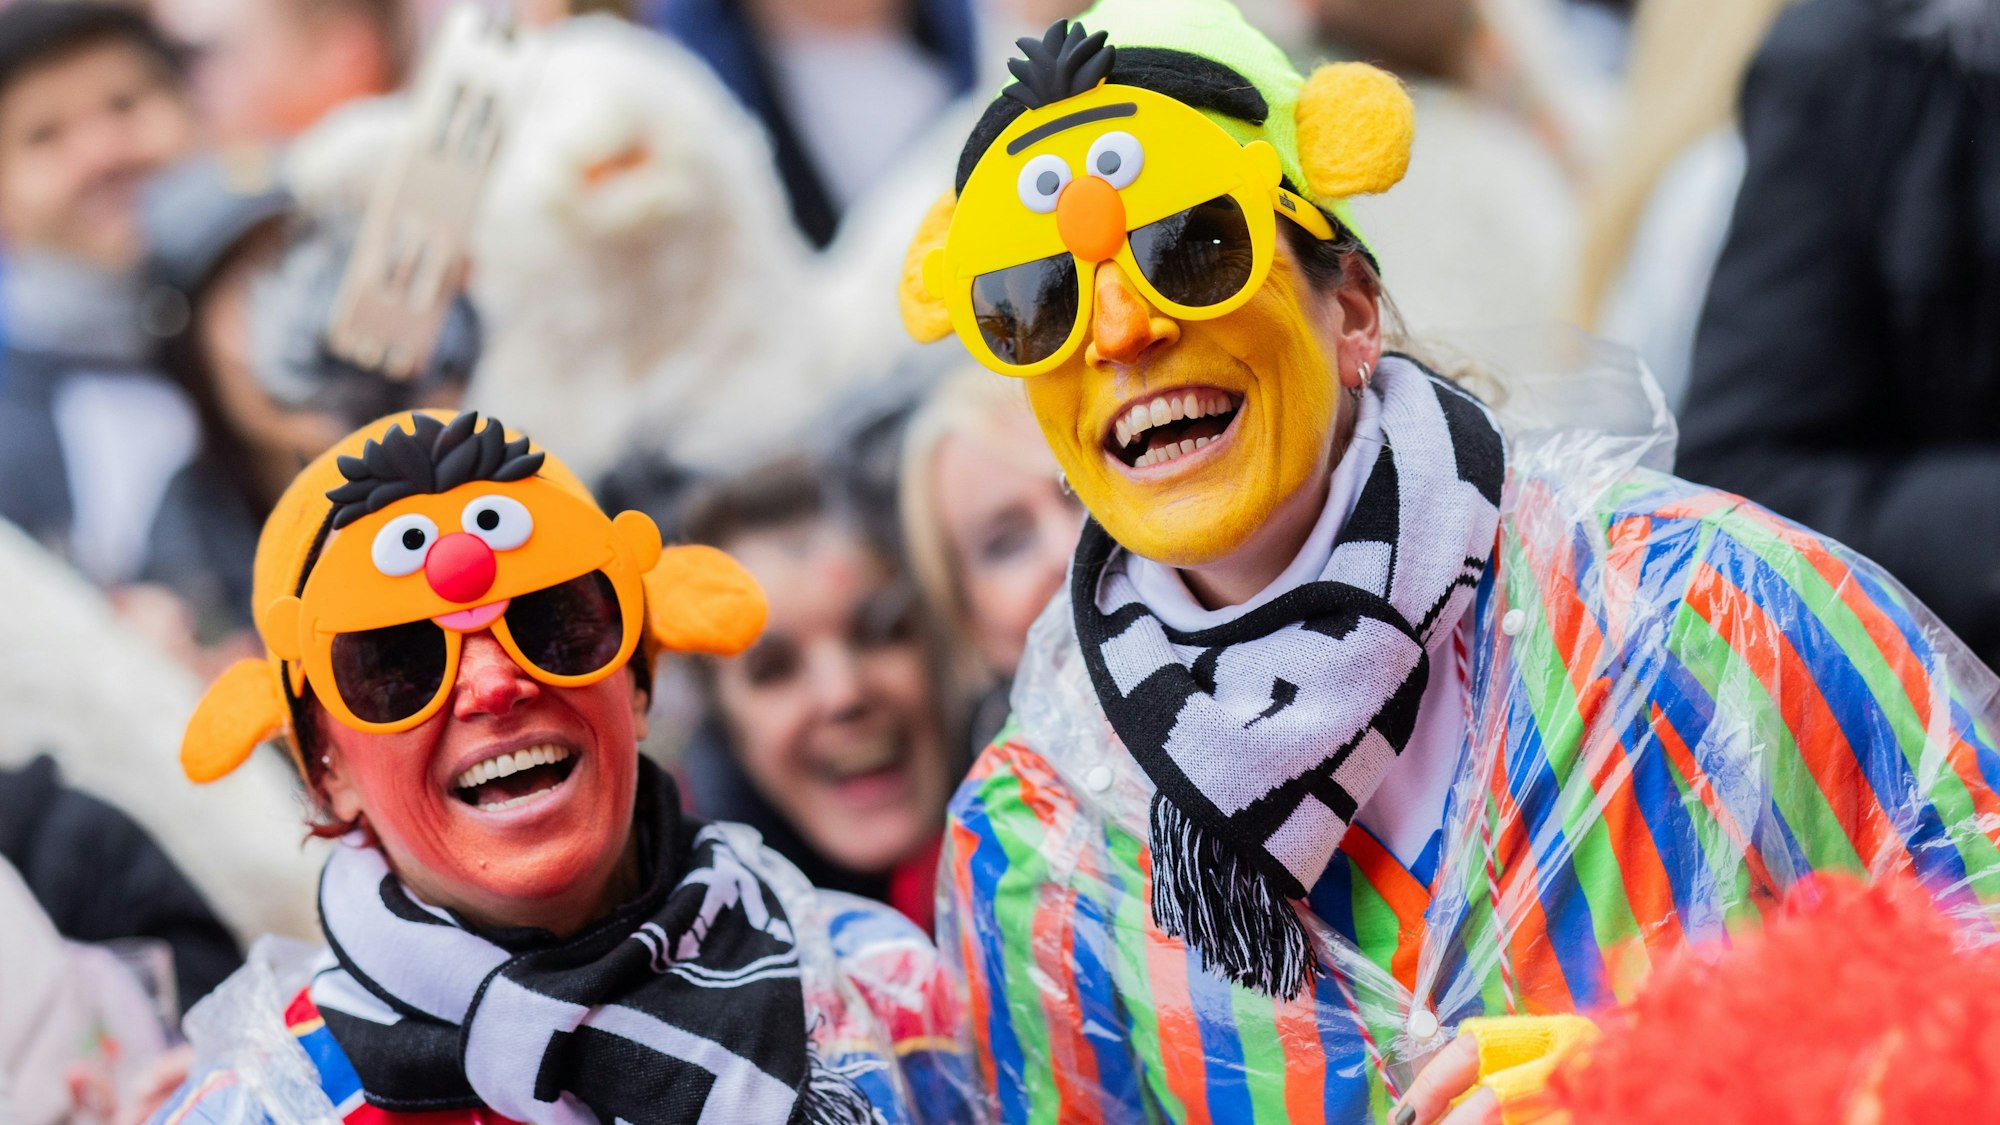 Ernie und Bert feiern den Beginn des Straßenkarnevals ebenfalls in Köln mit.